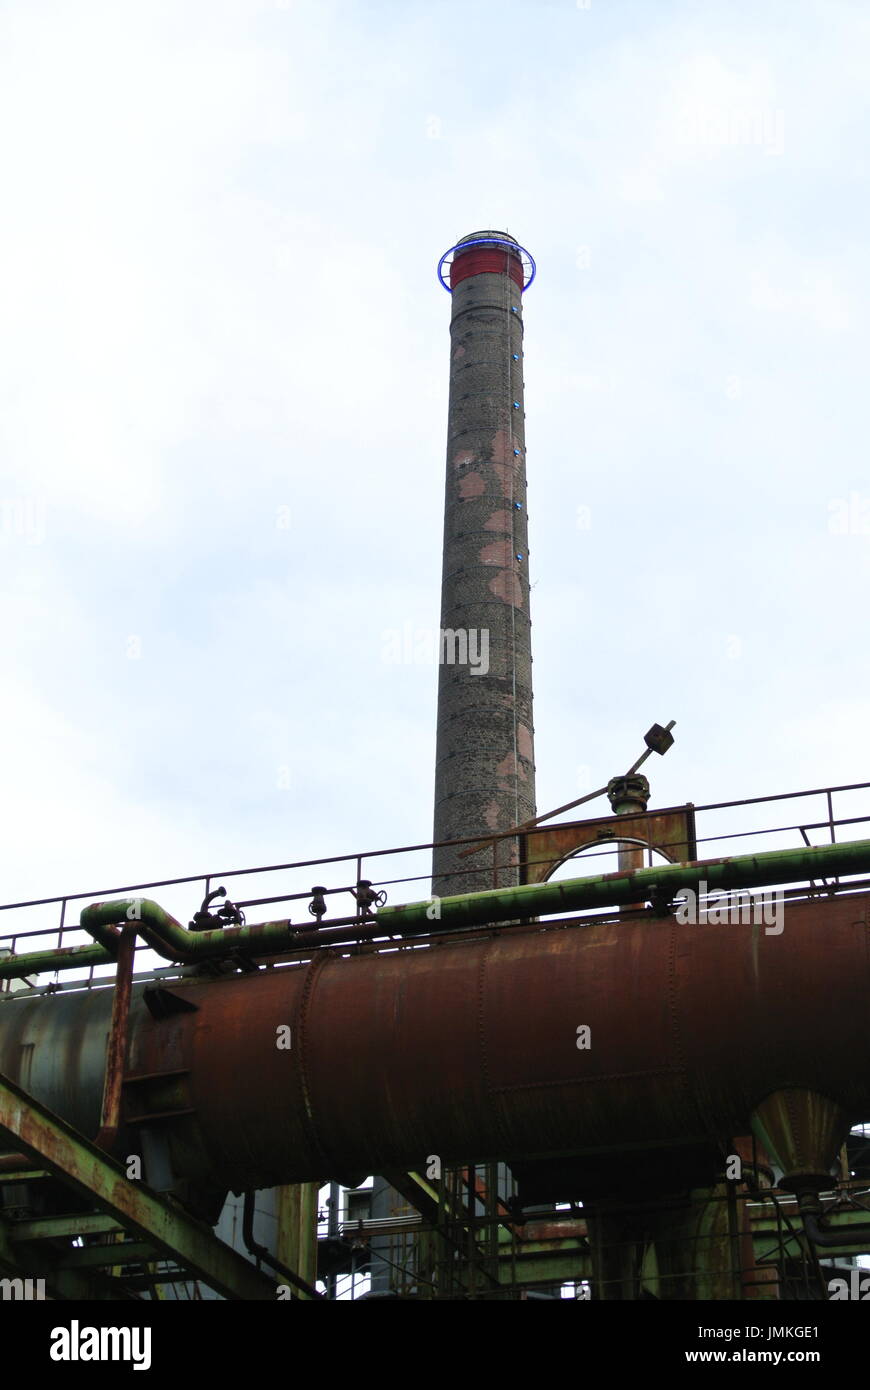 Large chimney at Landschaftspark Duisburg Nord, Germany Stock Photo